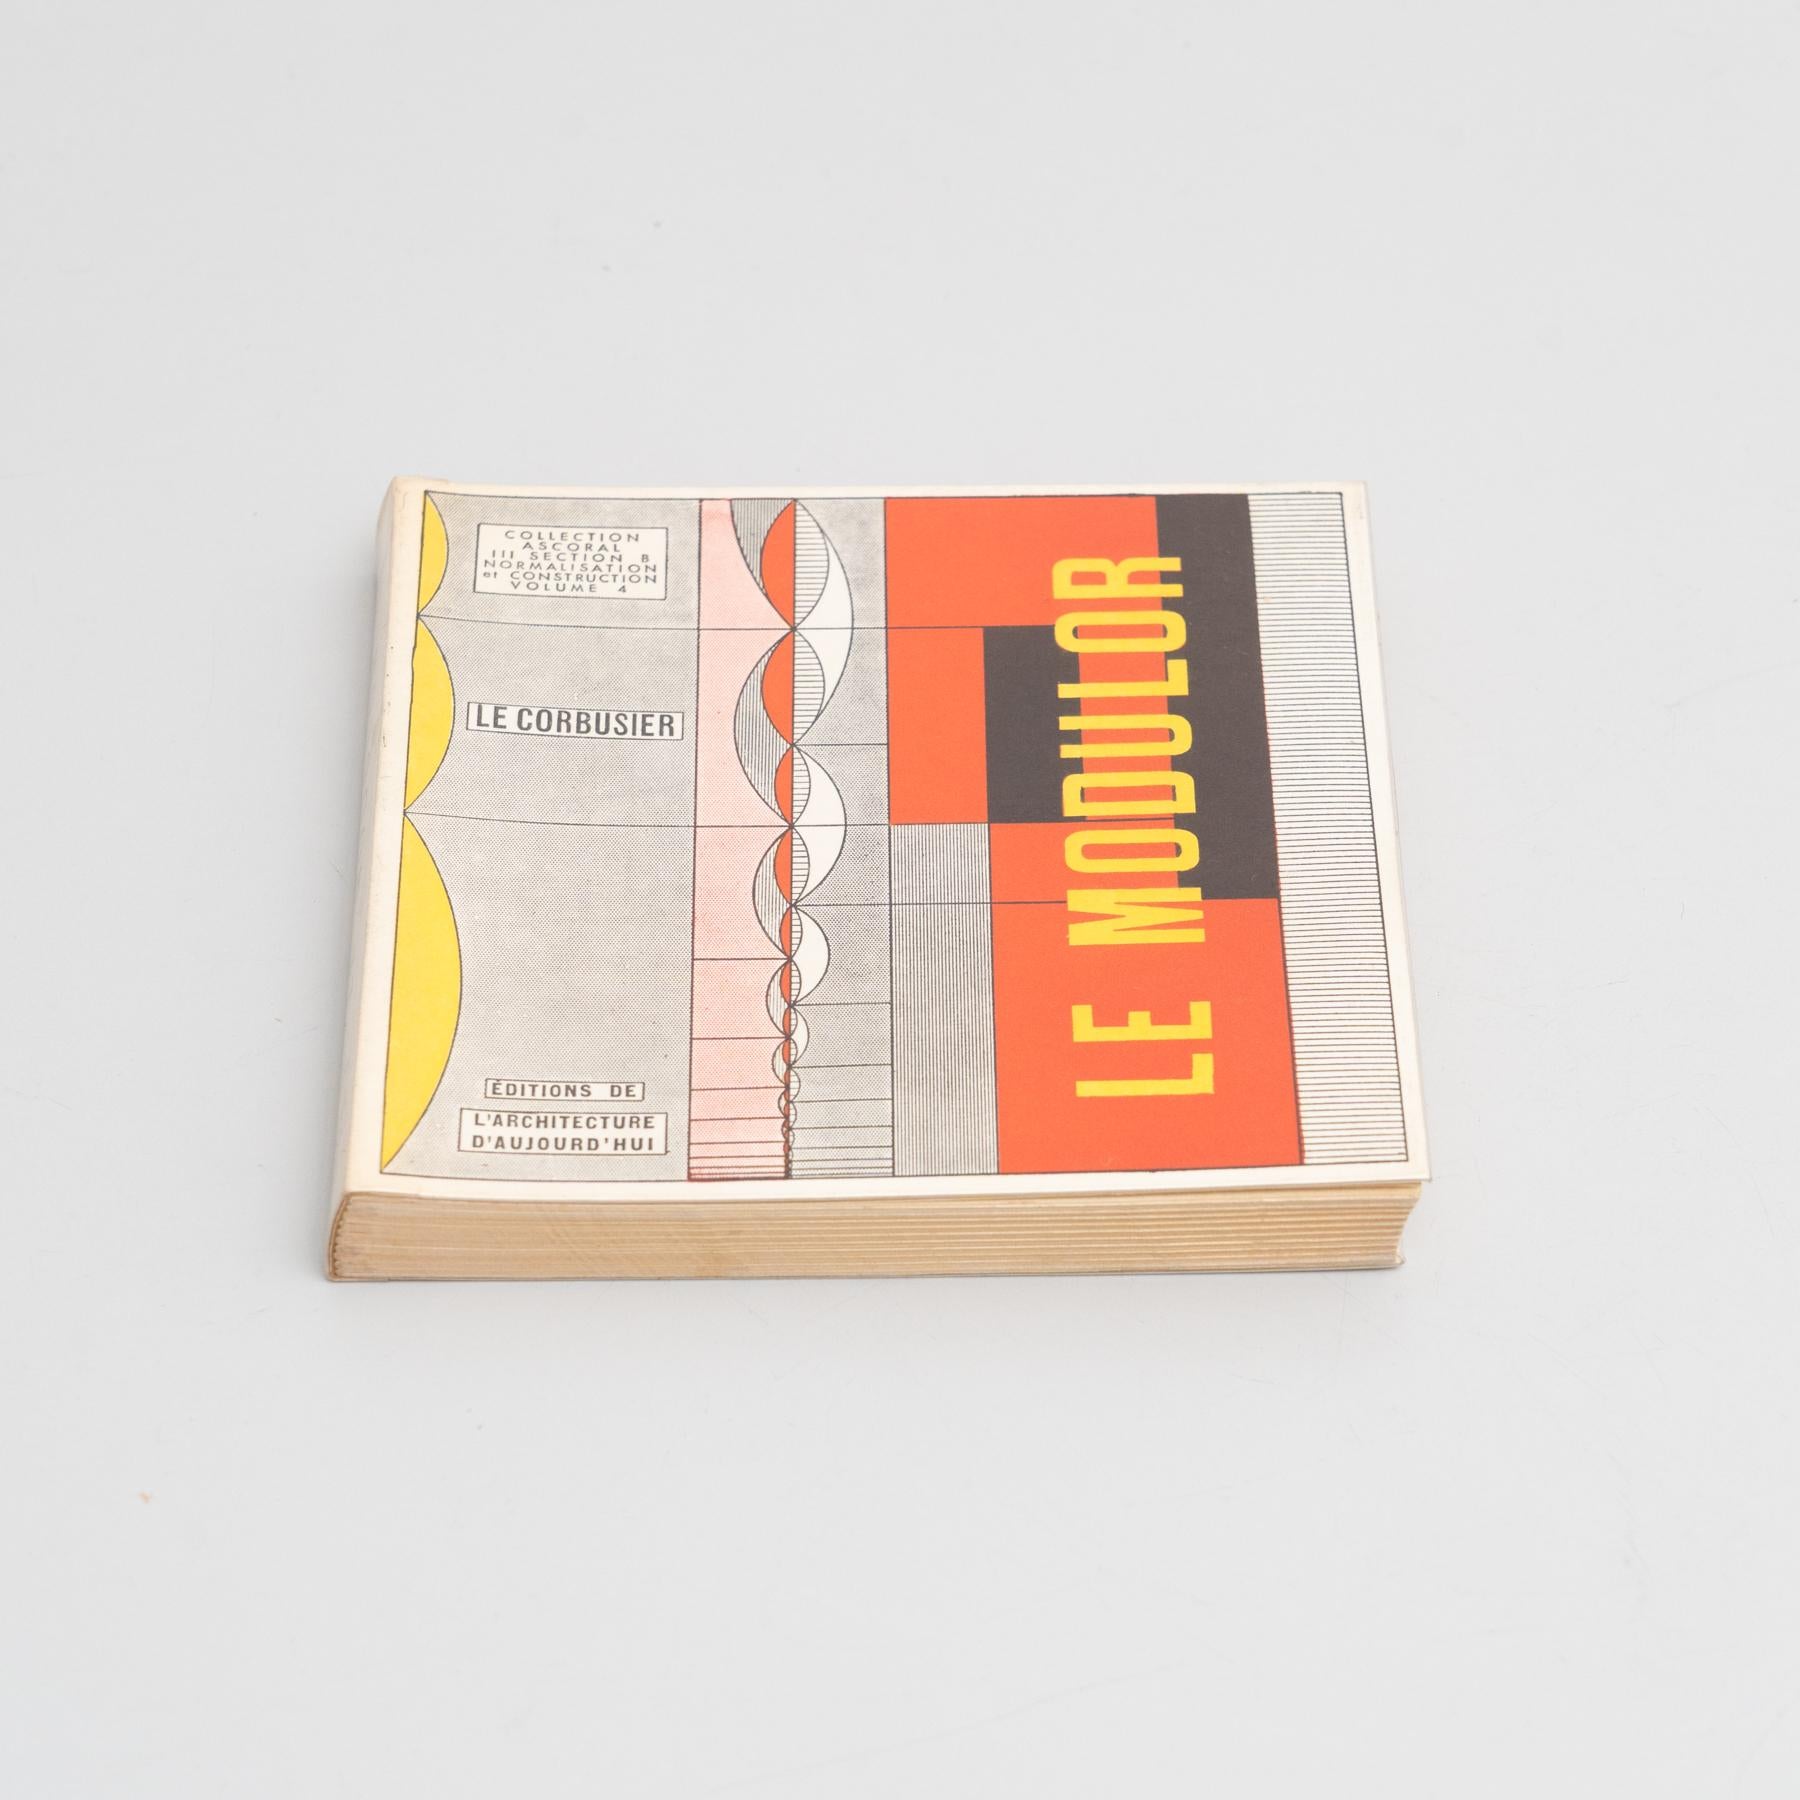 Livre Le Corbusier Der Modulor. Le Corbusier a publié Le Modulor en 1948, suivi de Modulor 2 en 1955. Ces ouvrages ont été publiés pour la première fois en anglais sous le titre The Modulor en 1954 et Modulor 2 (Let the User Speak Next) en 1958. Le